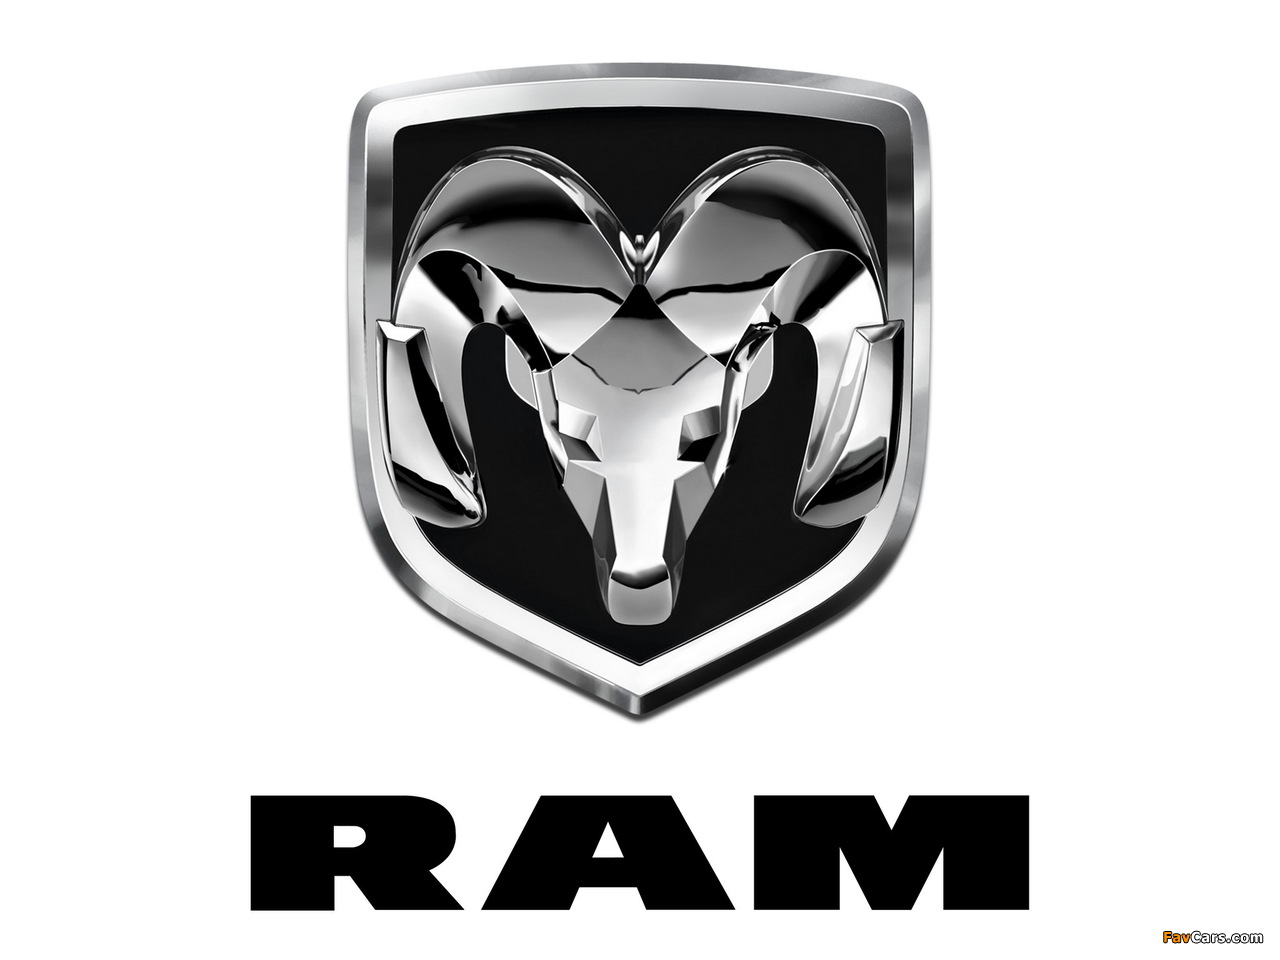 Ram photos (1280 x 960)